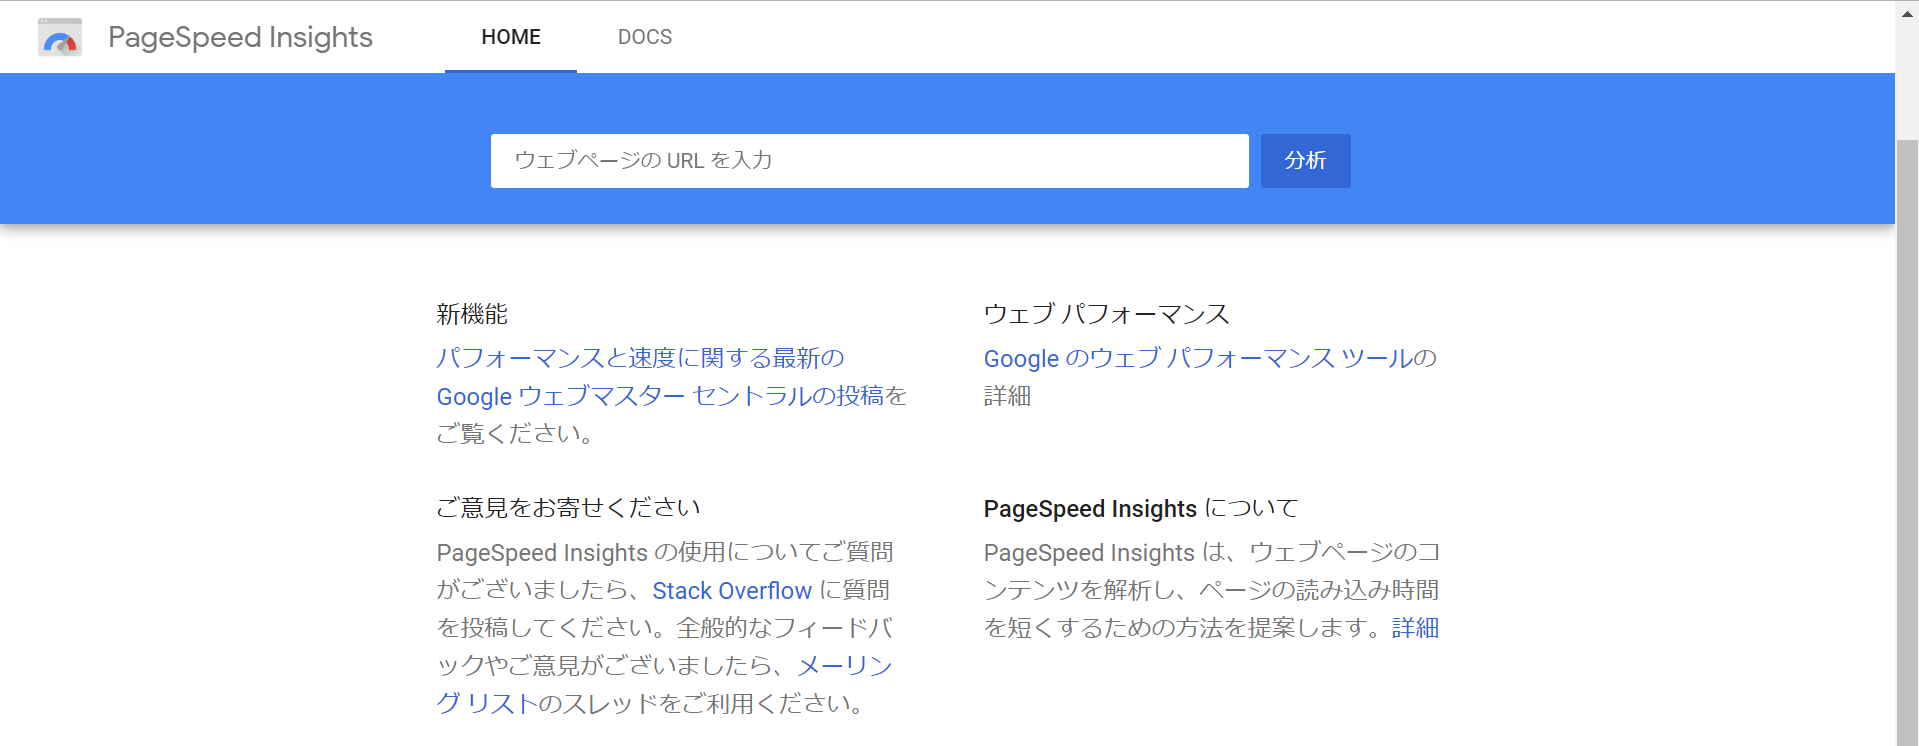 PageSpeed Insights公式サイトのトップ画面